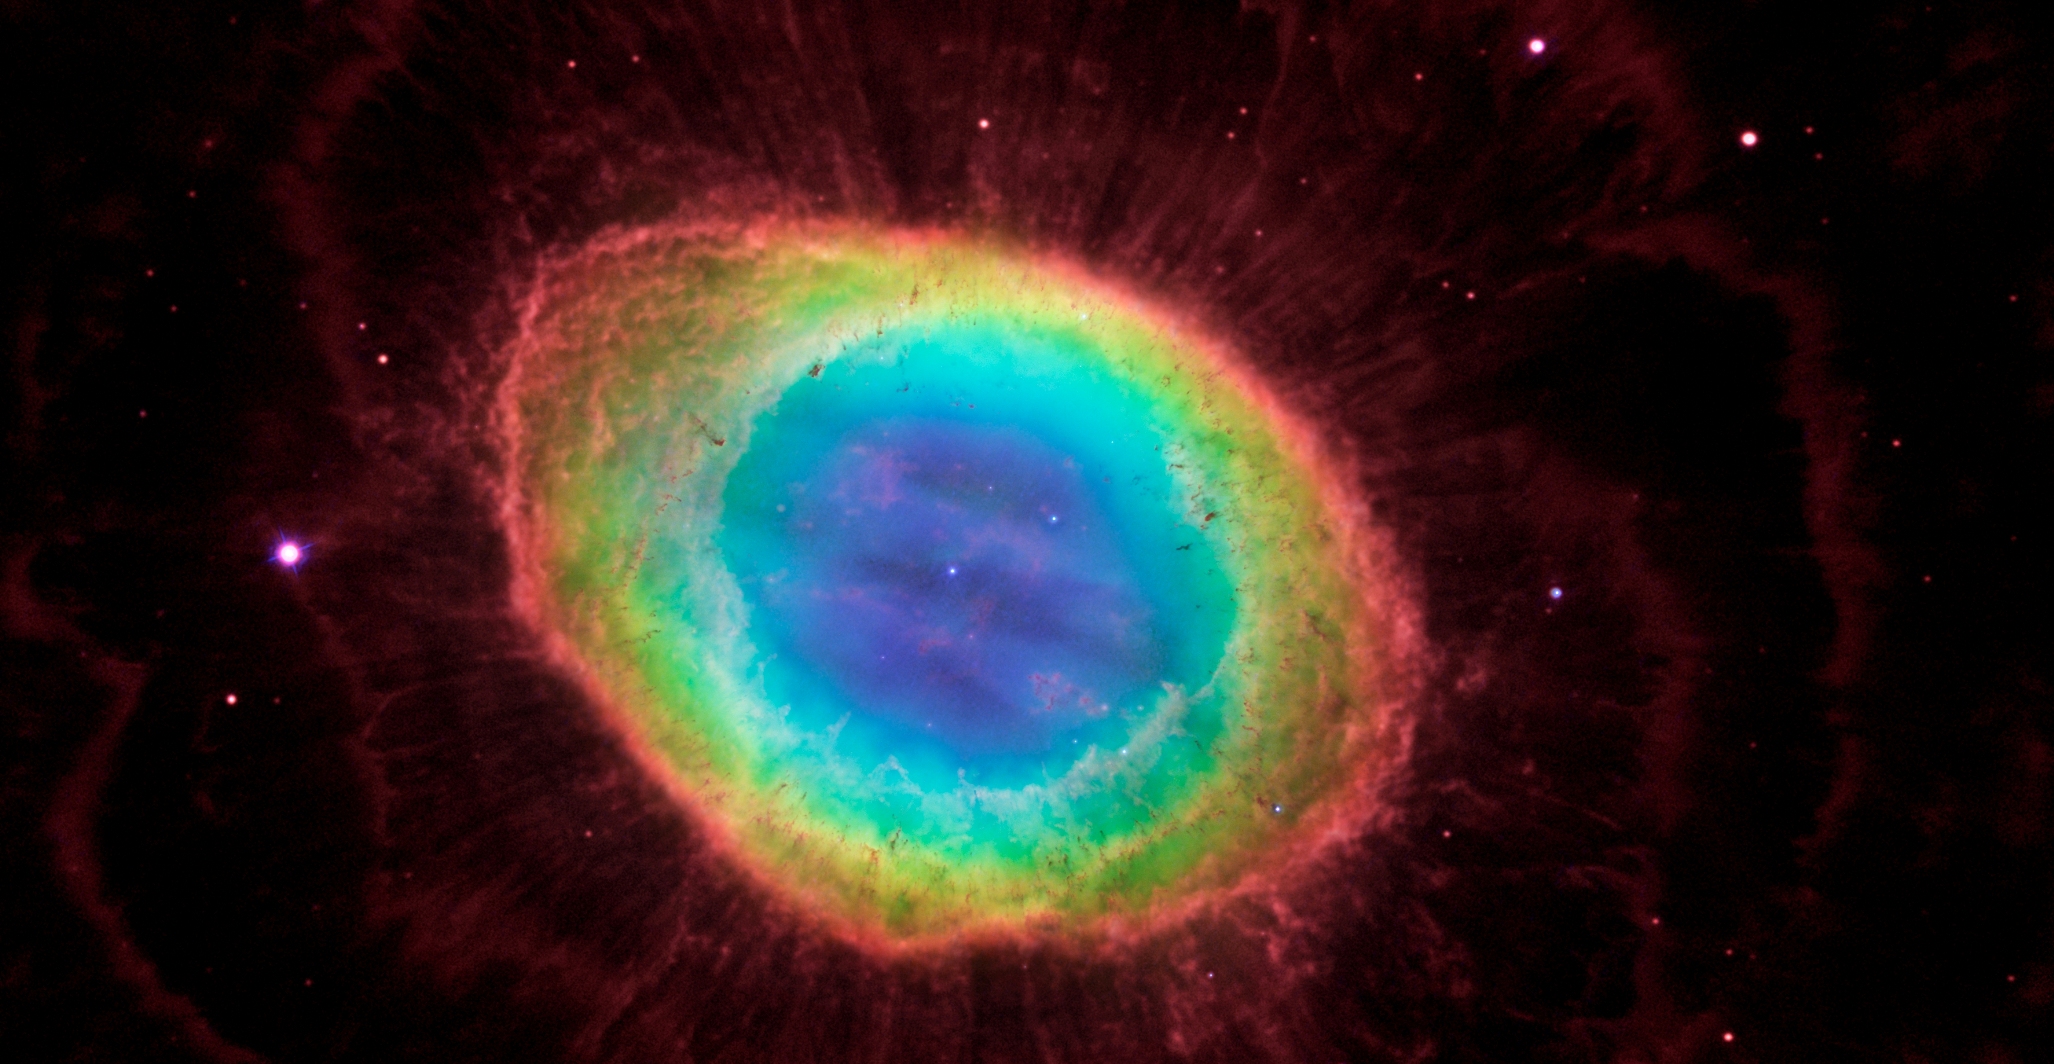 La Nébuleuse de la Lyre (en anglais Ring Nebula), M57, est une nébuleuse planétaire située comme son nom l'indique dans la constellation de la Lyre. Elle est le produit de la matière éjectée par une étoile mourante qui s'est transformée il y a des milliers d'années en la naine blanche brillante que l'on distingue en son centre. © Nasa